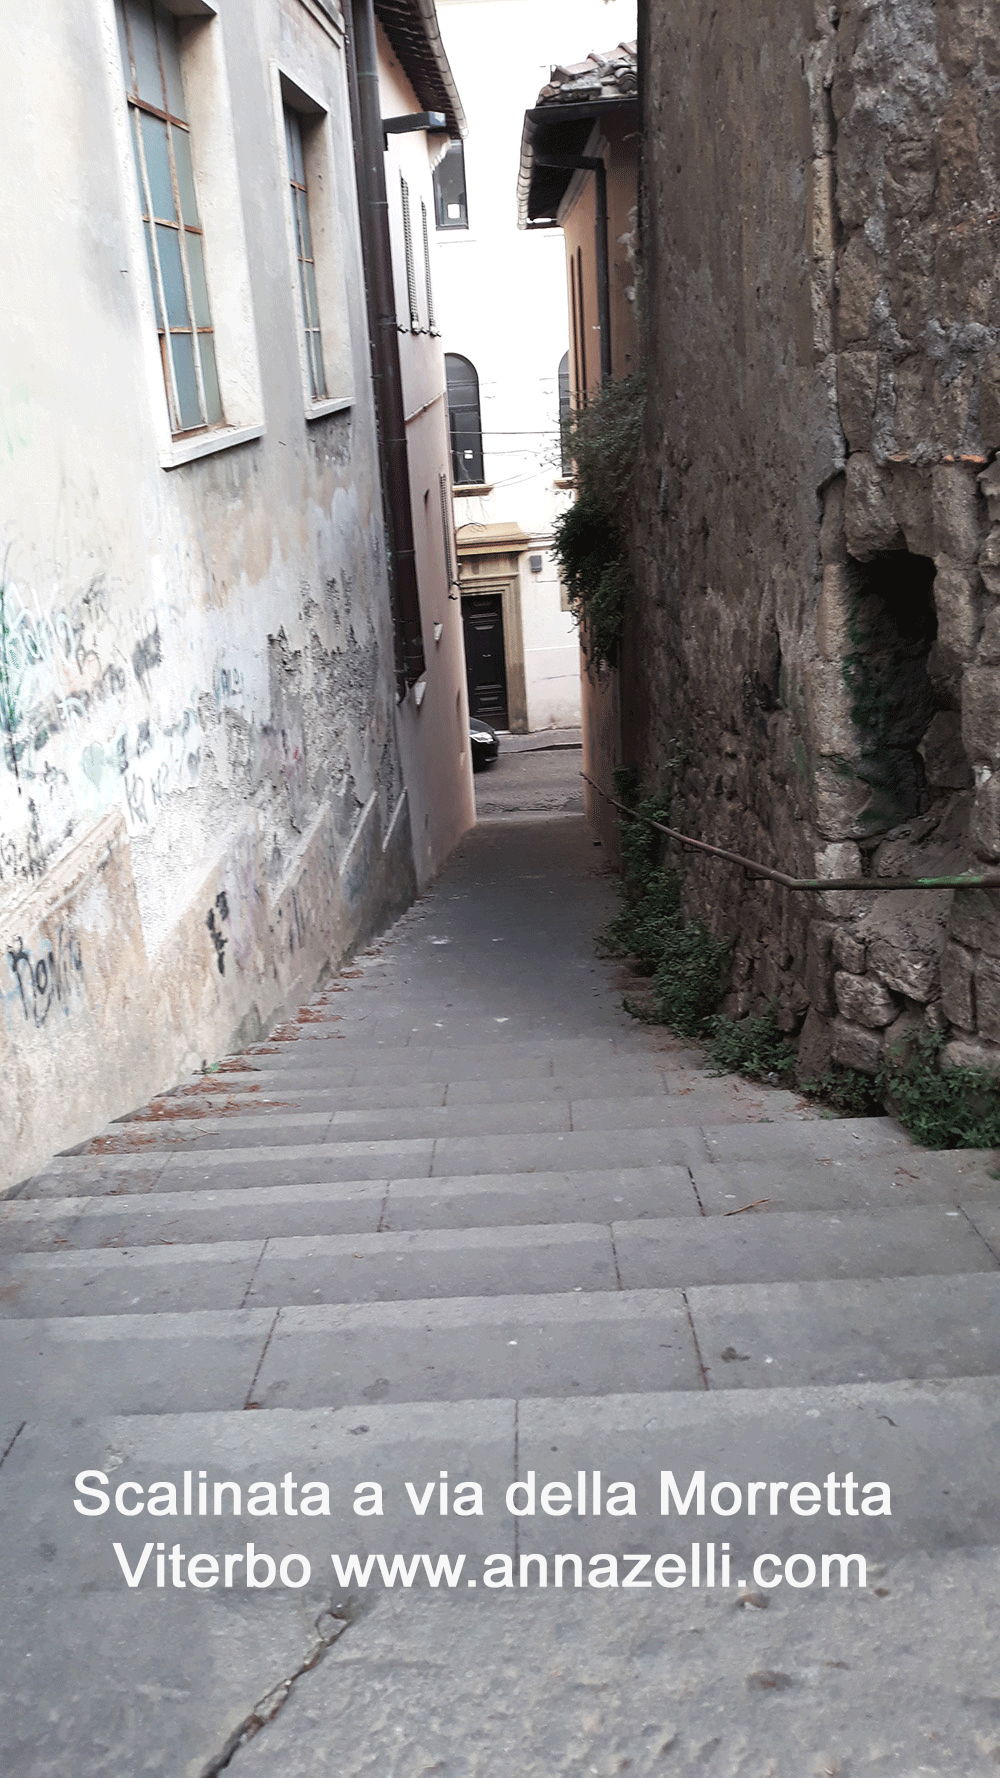 scalinata a via della morretta viterbo centro storico info e foto anna zelli